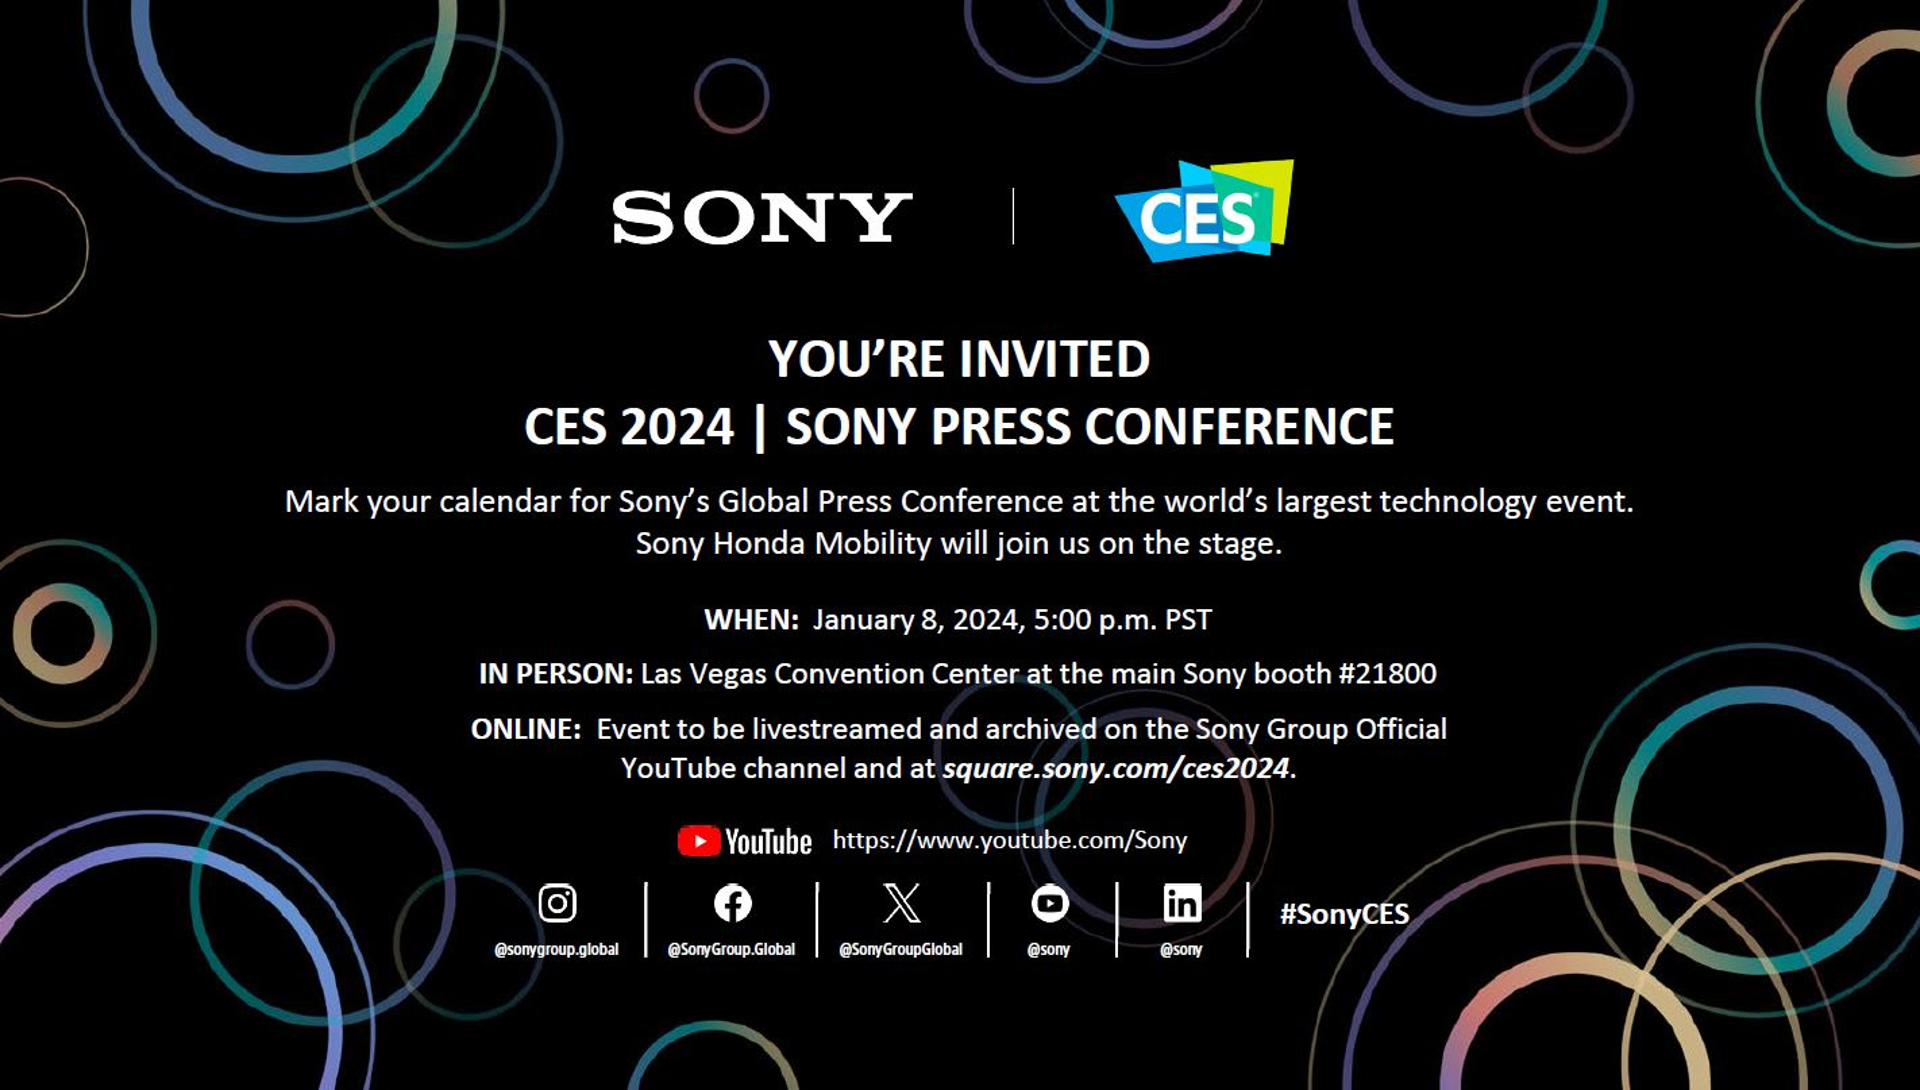 Sony al CES 2024, conferenza stampa per conoscere tutte le novità l'8  gennaio